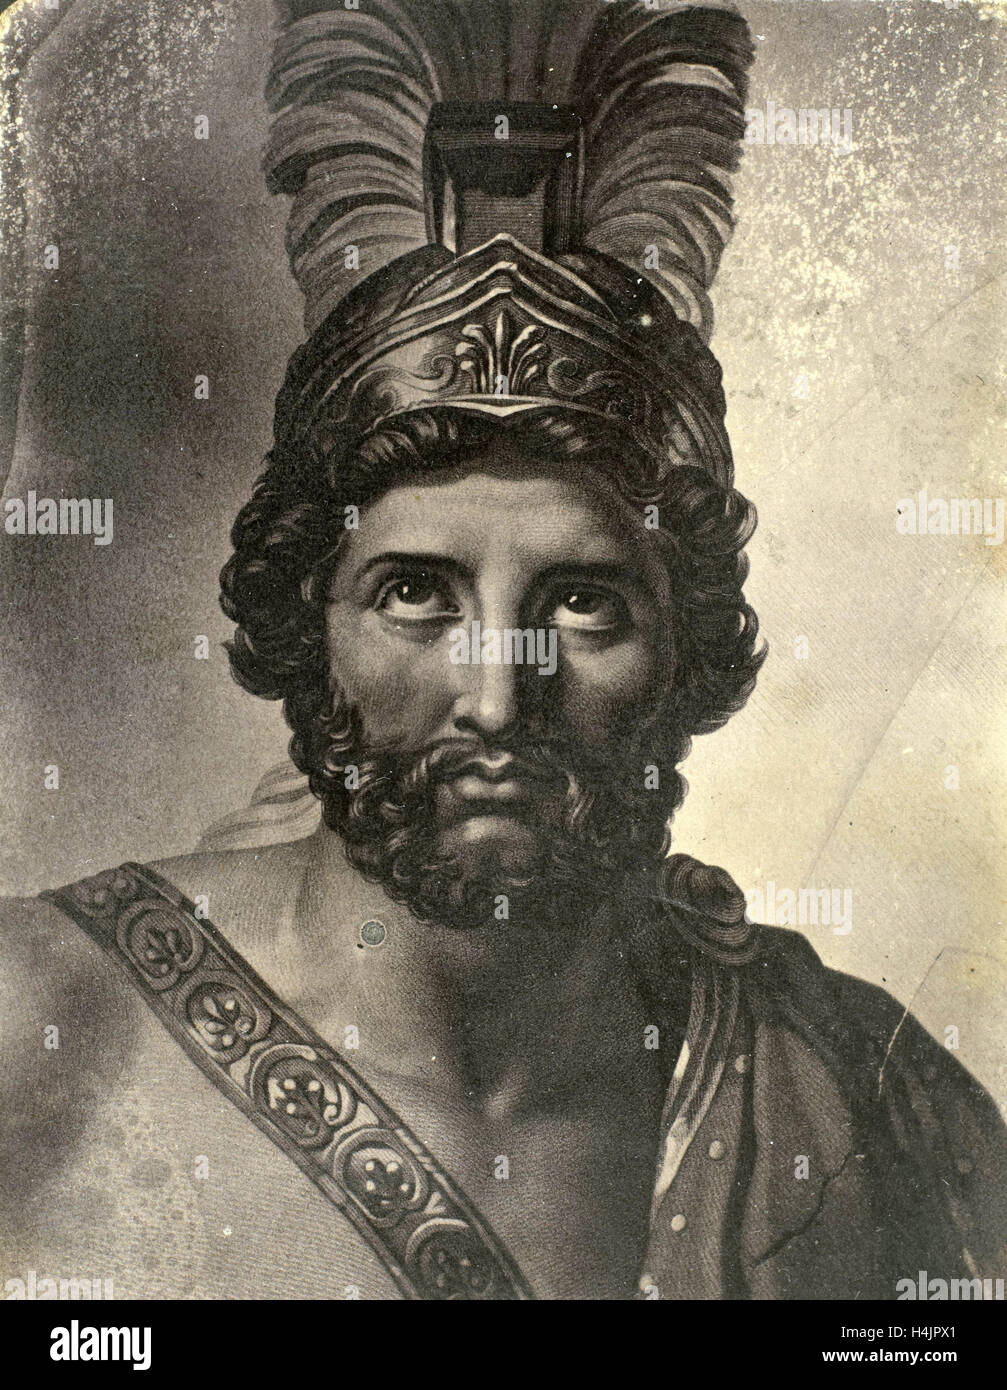 Retrato de Leonidas, rey de Esparta, Eduard Isaac Asser, Jacques Louis David, 1855 Foto de stock